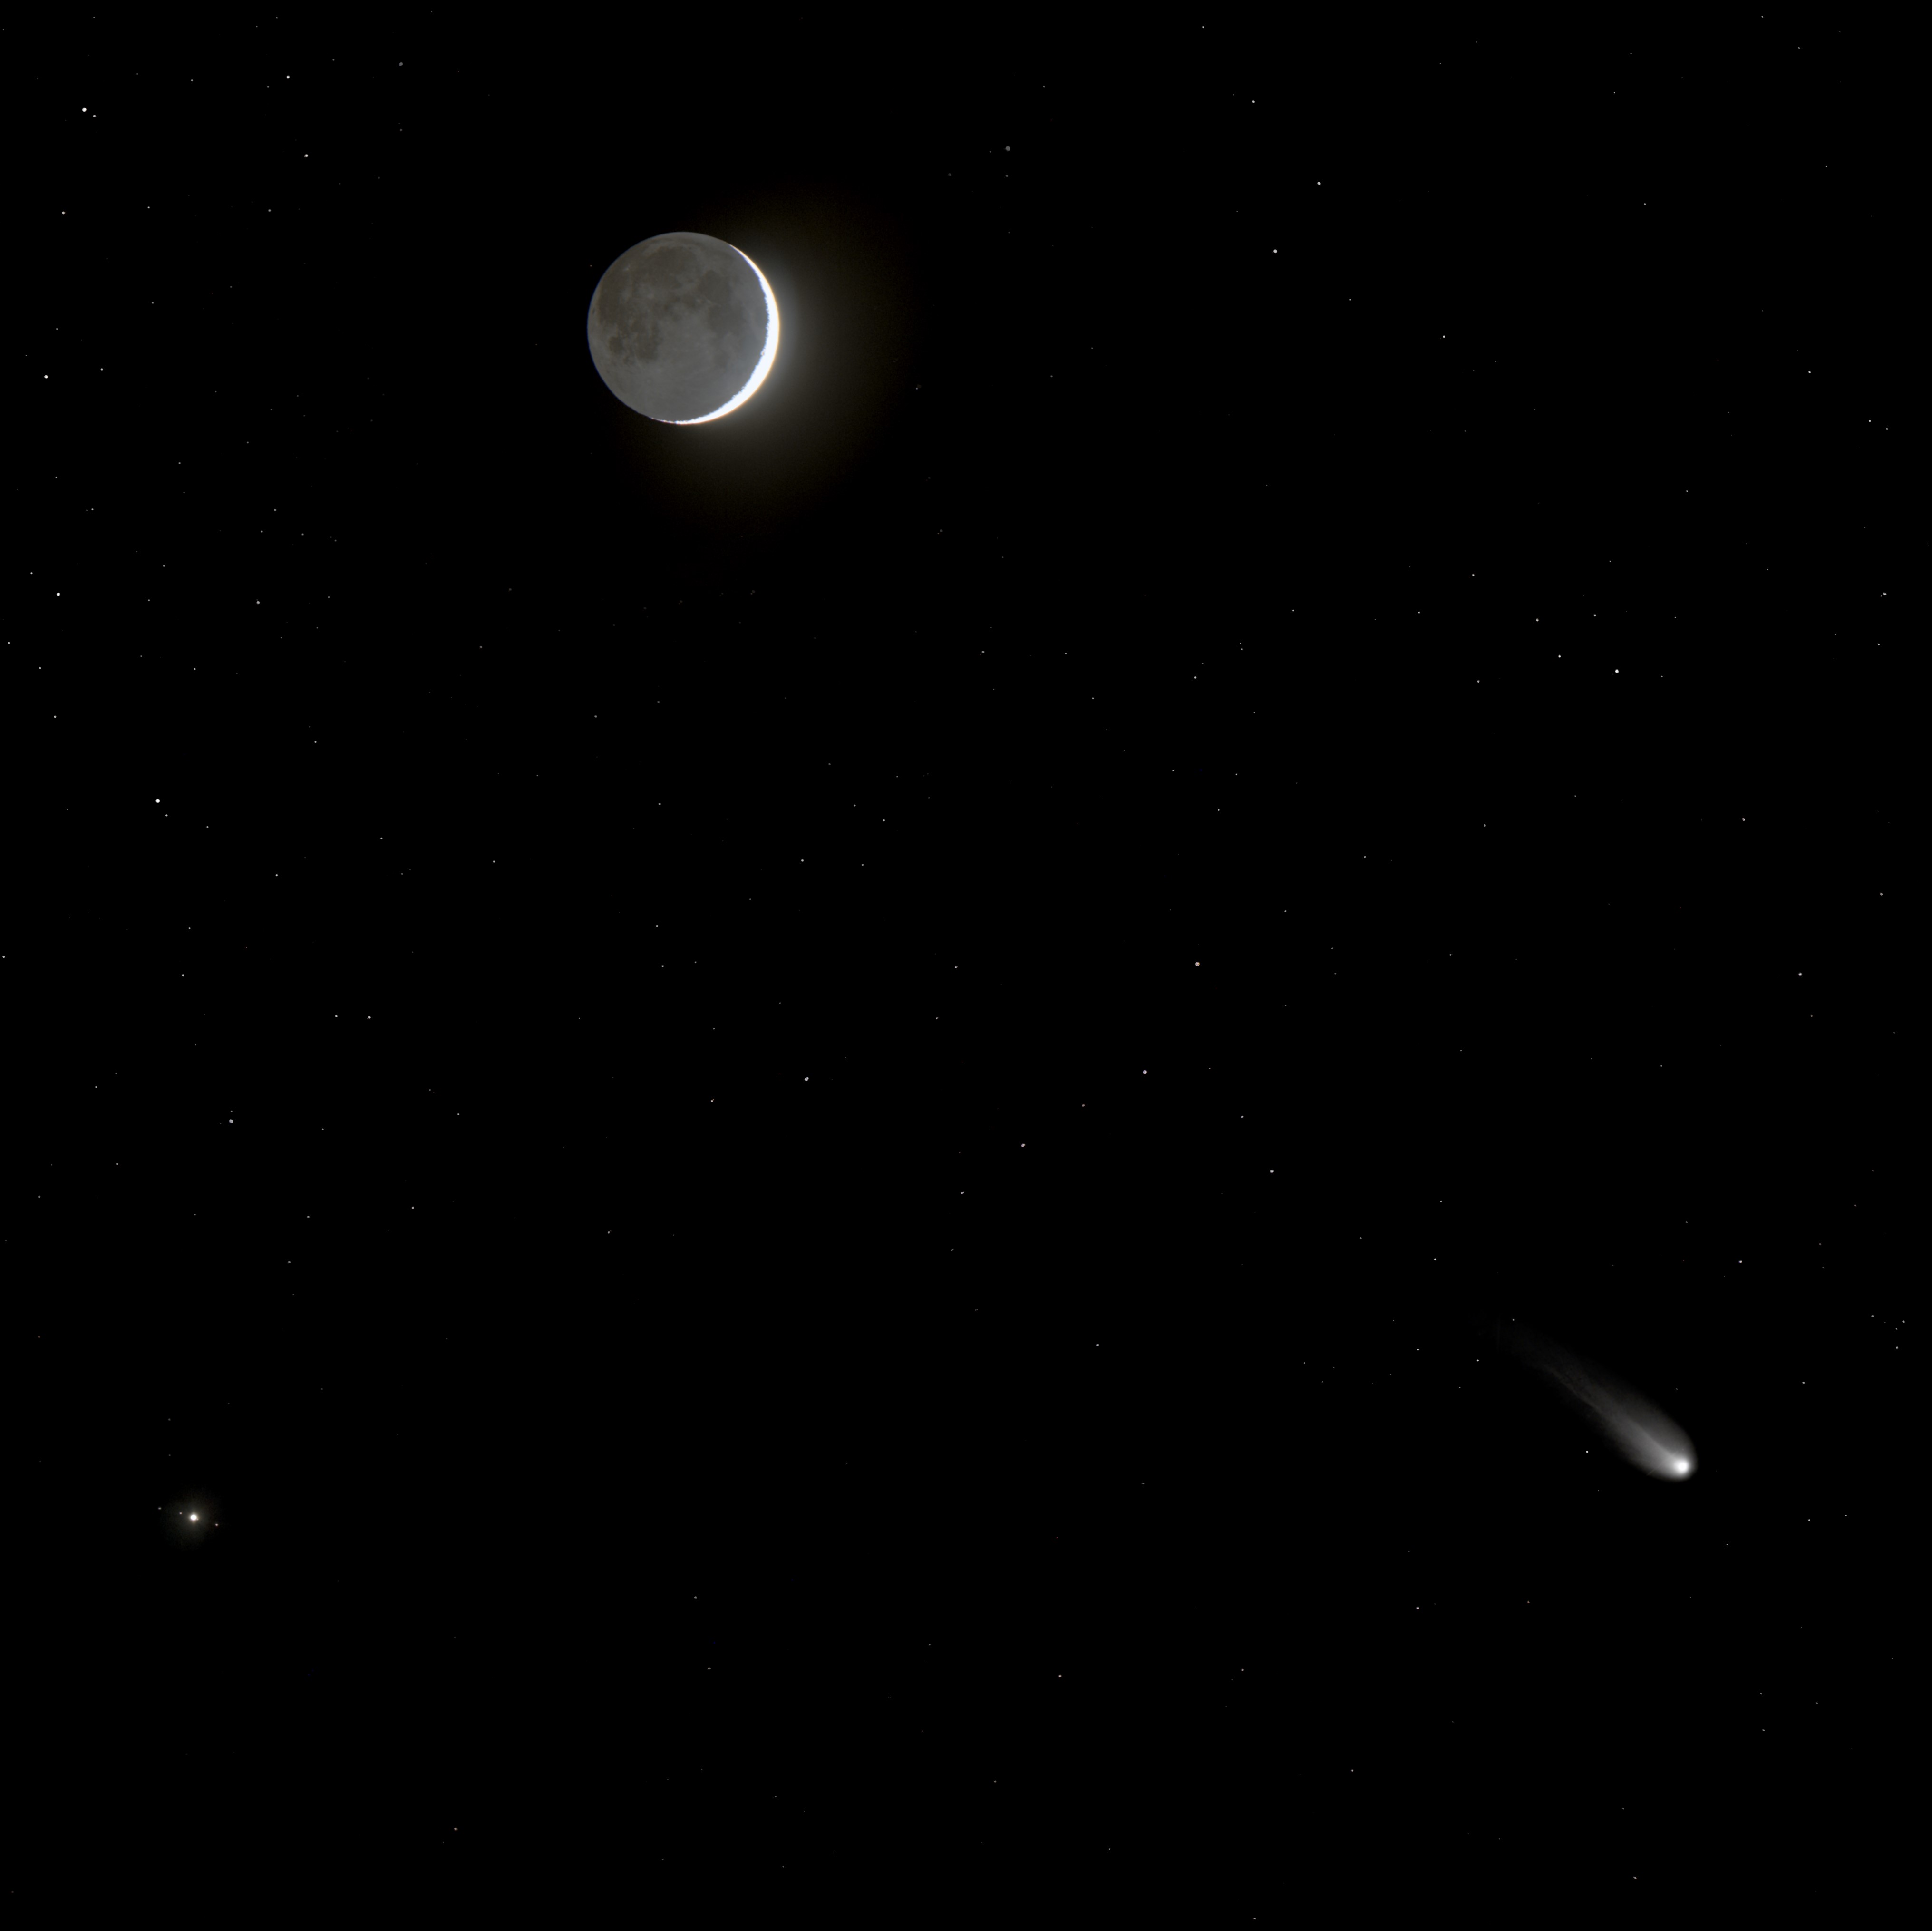 El 10 de abril (dos días después del eclipse total de Sol) cuando la Luna y Júpiter posaban junto al cometa 12P Pons-Brooks. La Luna, iluminada menos del 6% (mostrando principalmente su luz cenicienta – reflejo de nuestro planeta) se encuentra a unos 365.000 km. Júpiter, y sus satélites, están a unos 880 millones de kilómetros, mientras que el cometa 12P Pons-Brooks se encuentra en un término medio, a unos 240 millones de kilómetros. A pesar del mal tiempo dominante ese día, se pudo obtener este bonito cuadro con el Astrógrafo STC. (Créditos: Daniel López / IAC)